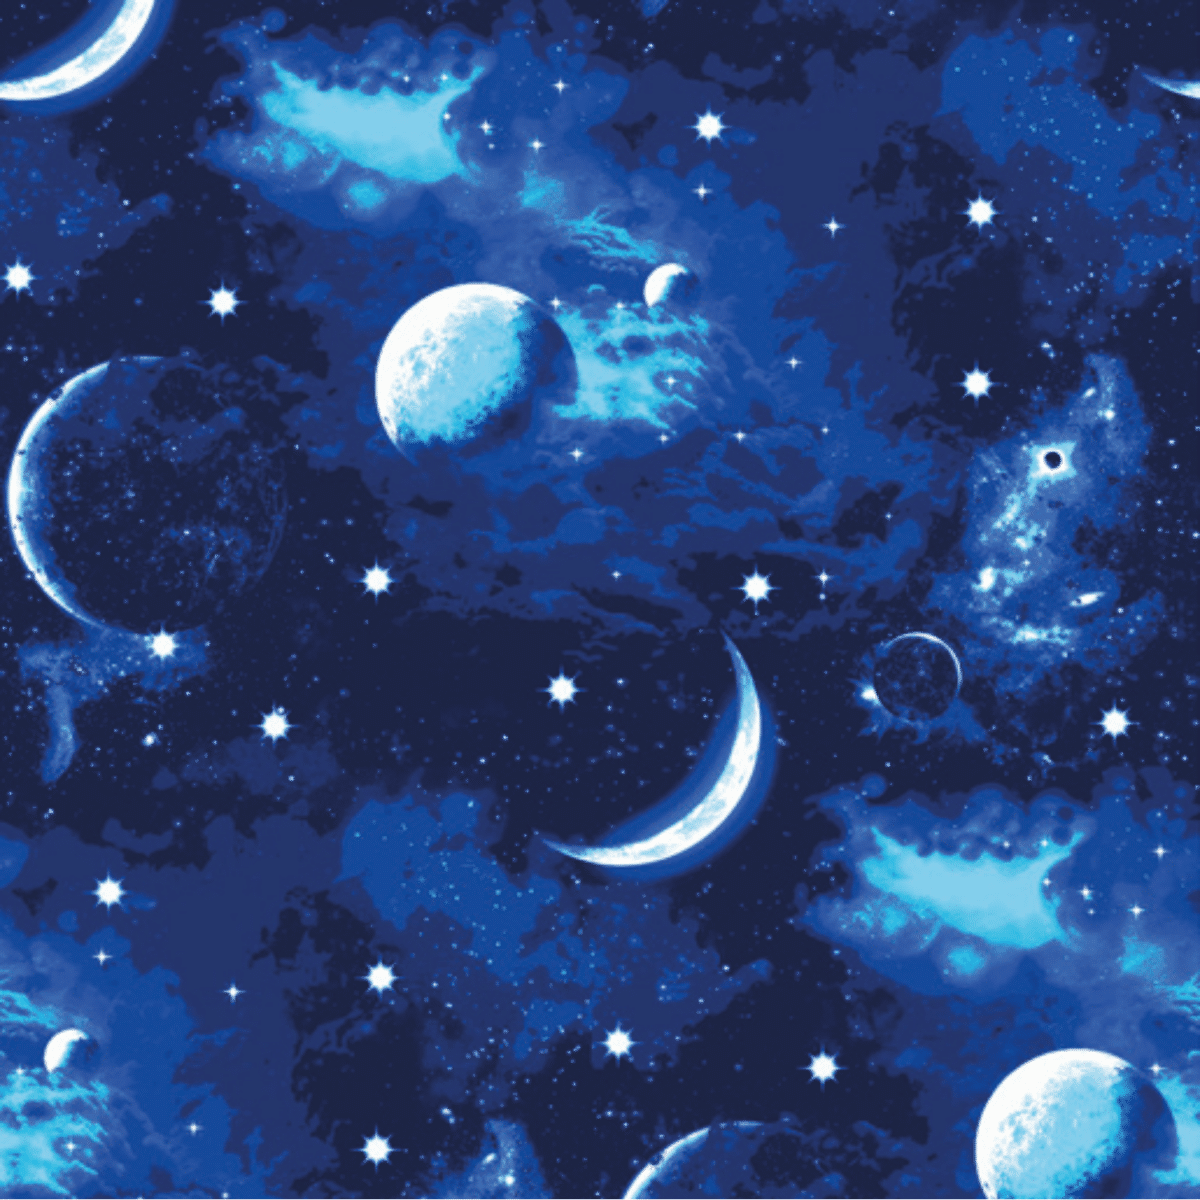 coperta-space-plaid-fantasia-sherpa-invernale-luna-stelle-notte-cielo-stellato-blu-dettaglio